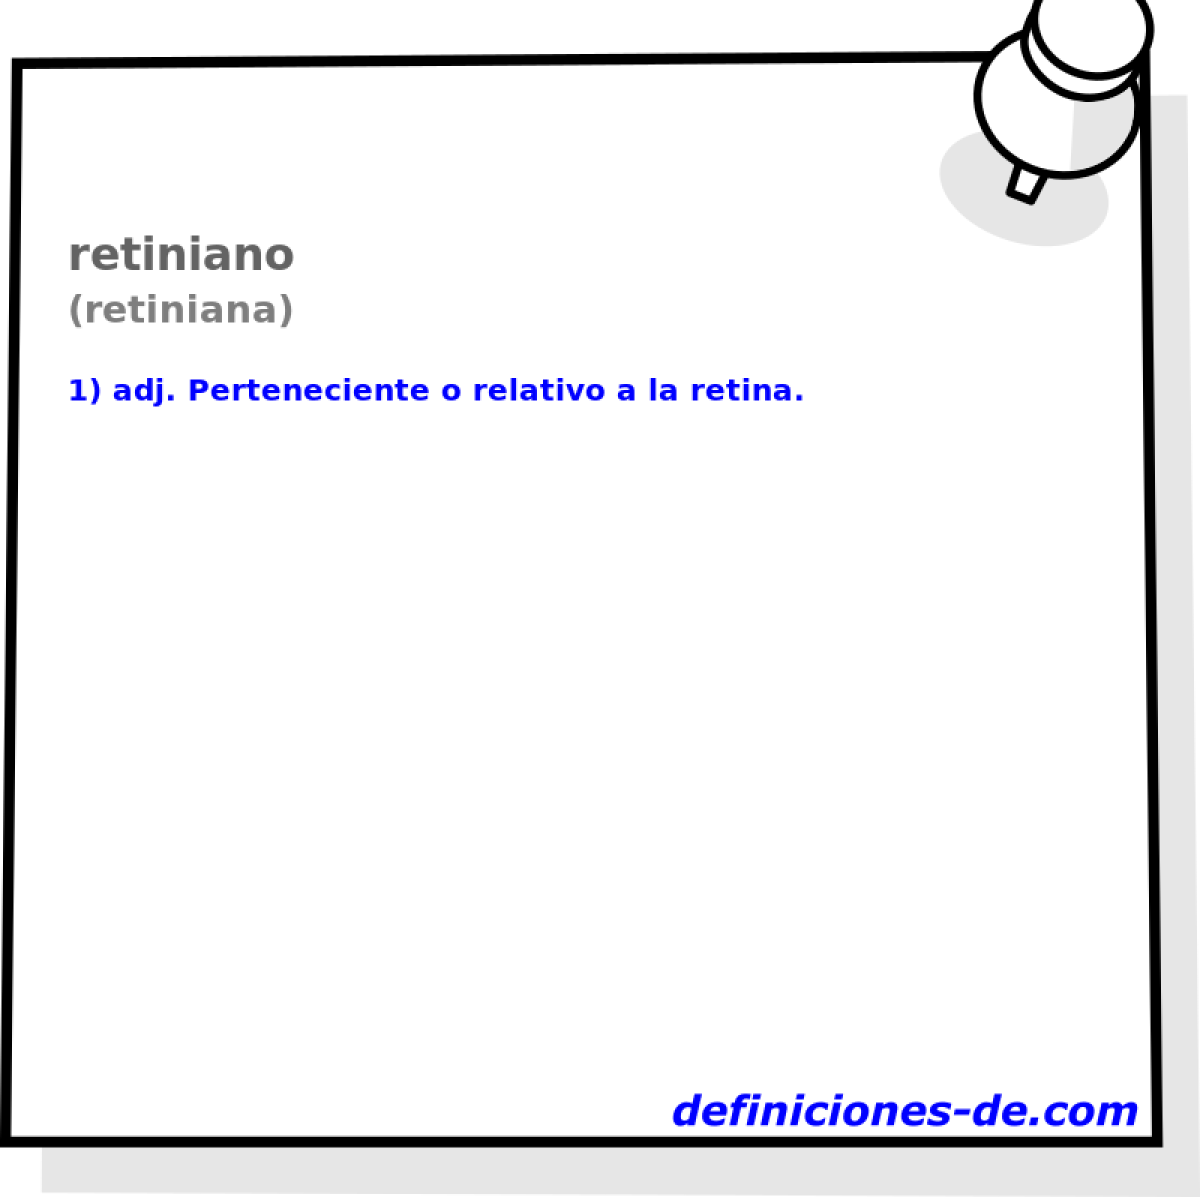 retiniano (retiniana)